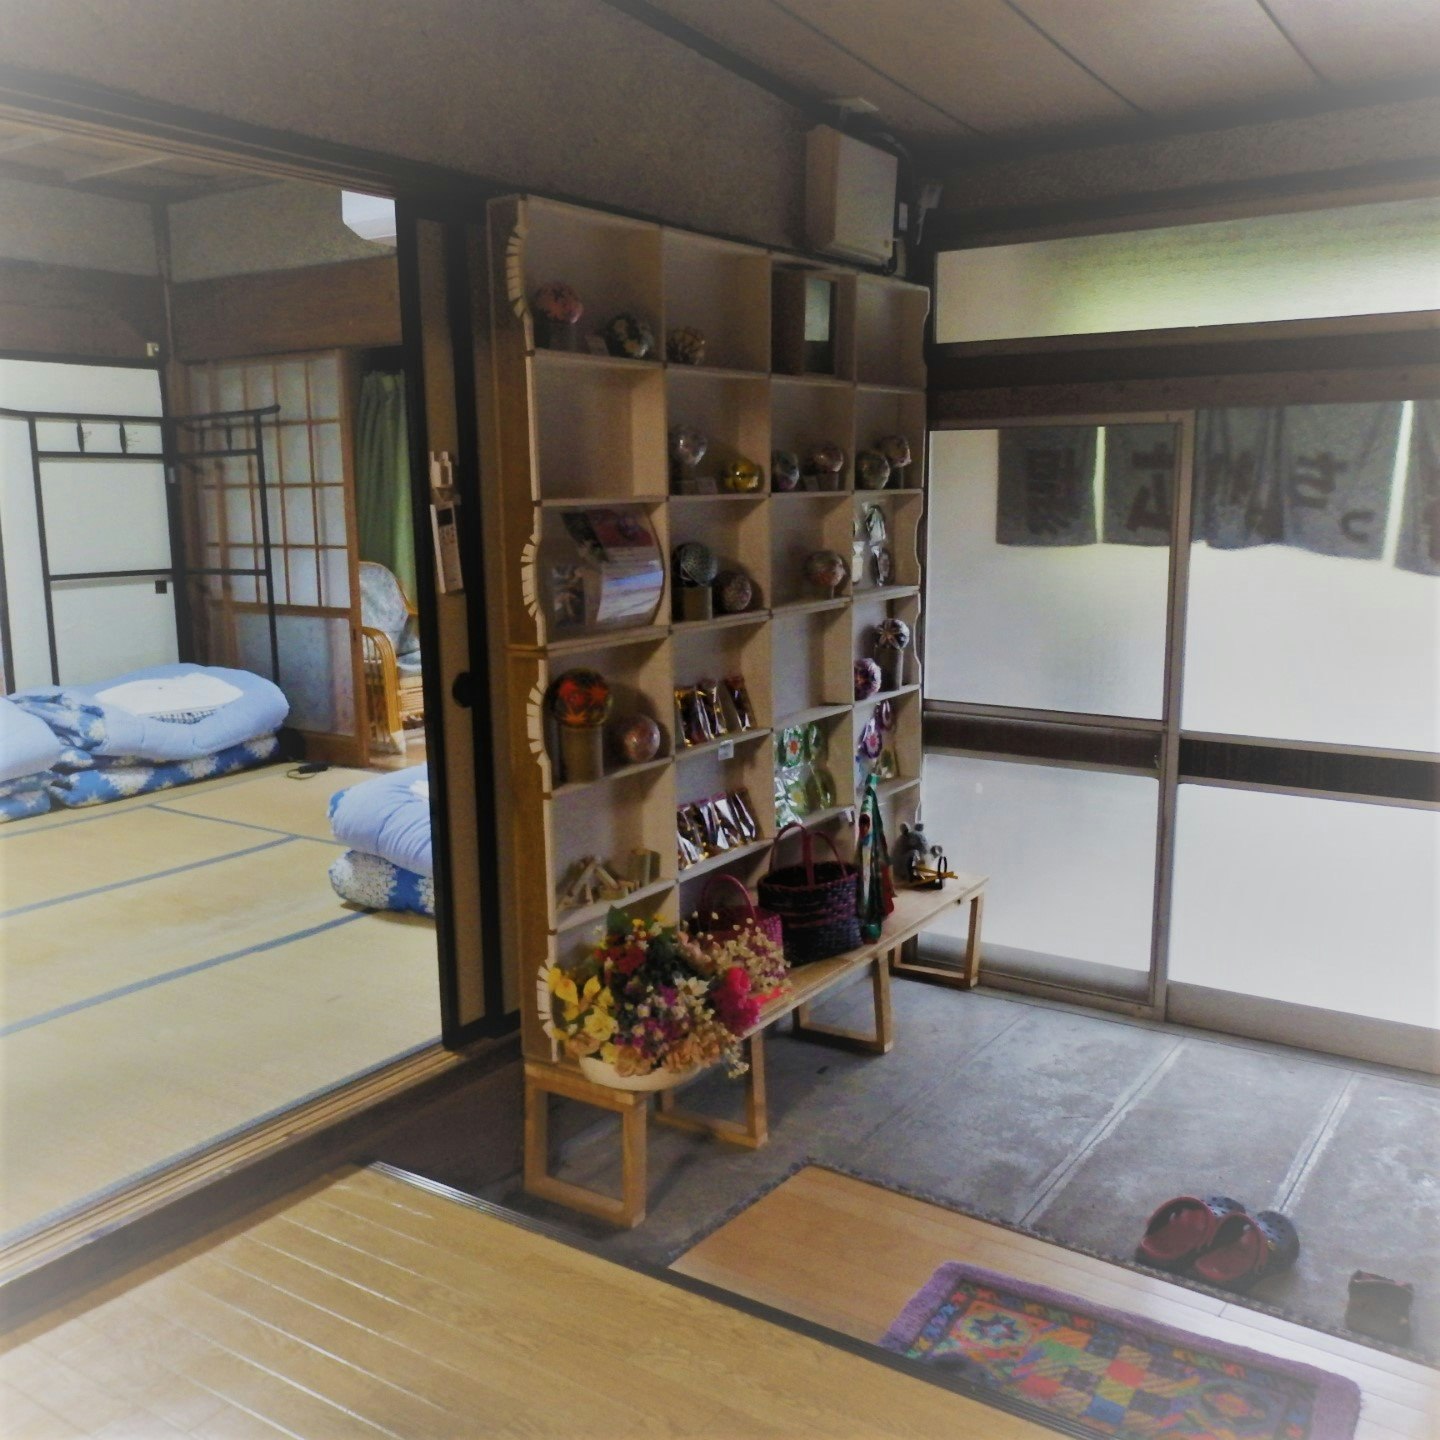 日本の昔の生活が感じれるそんな古民家です。